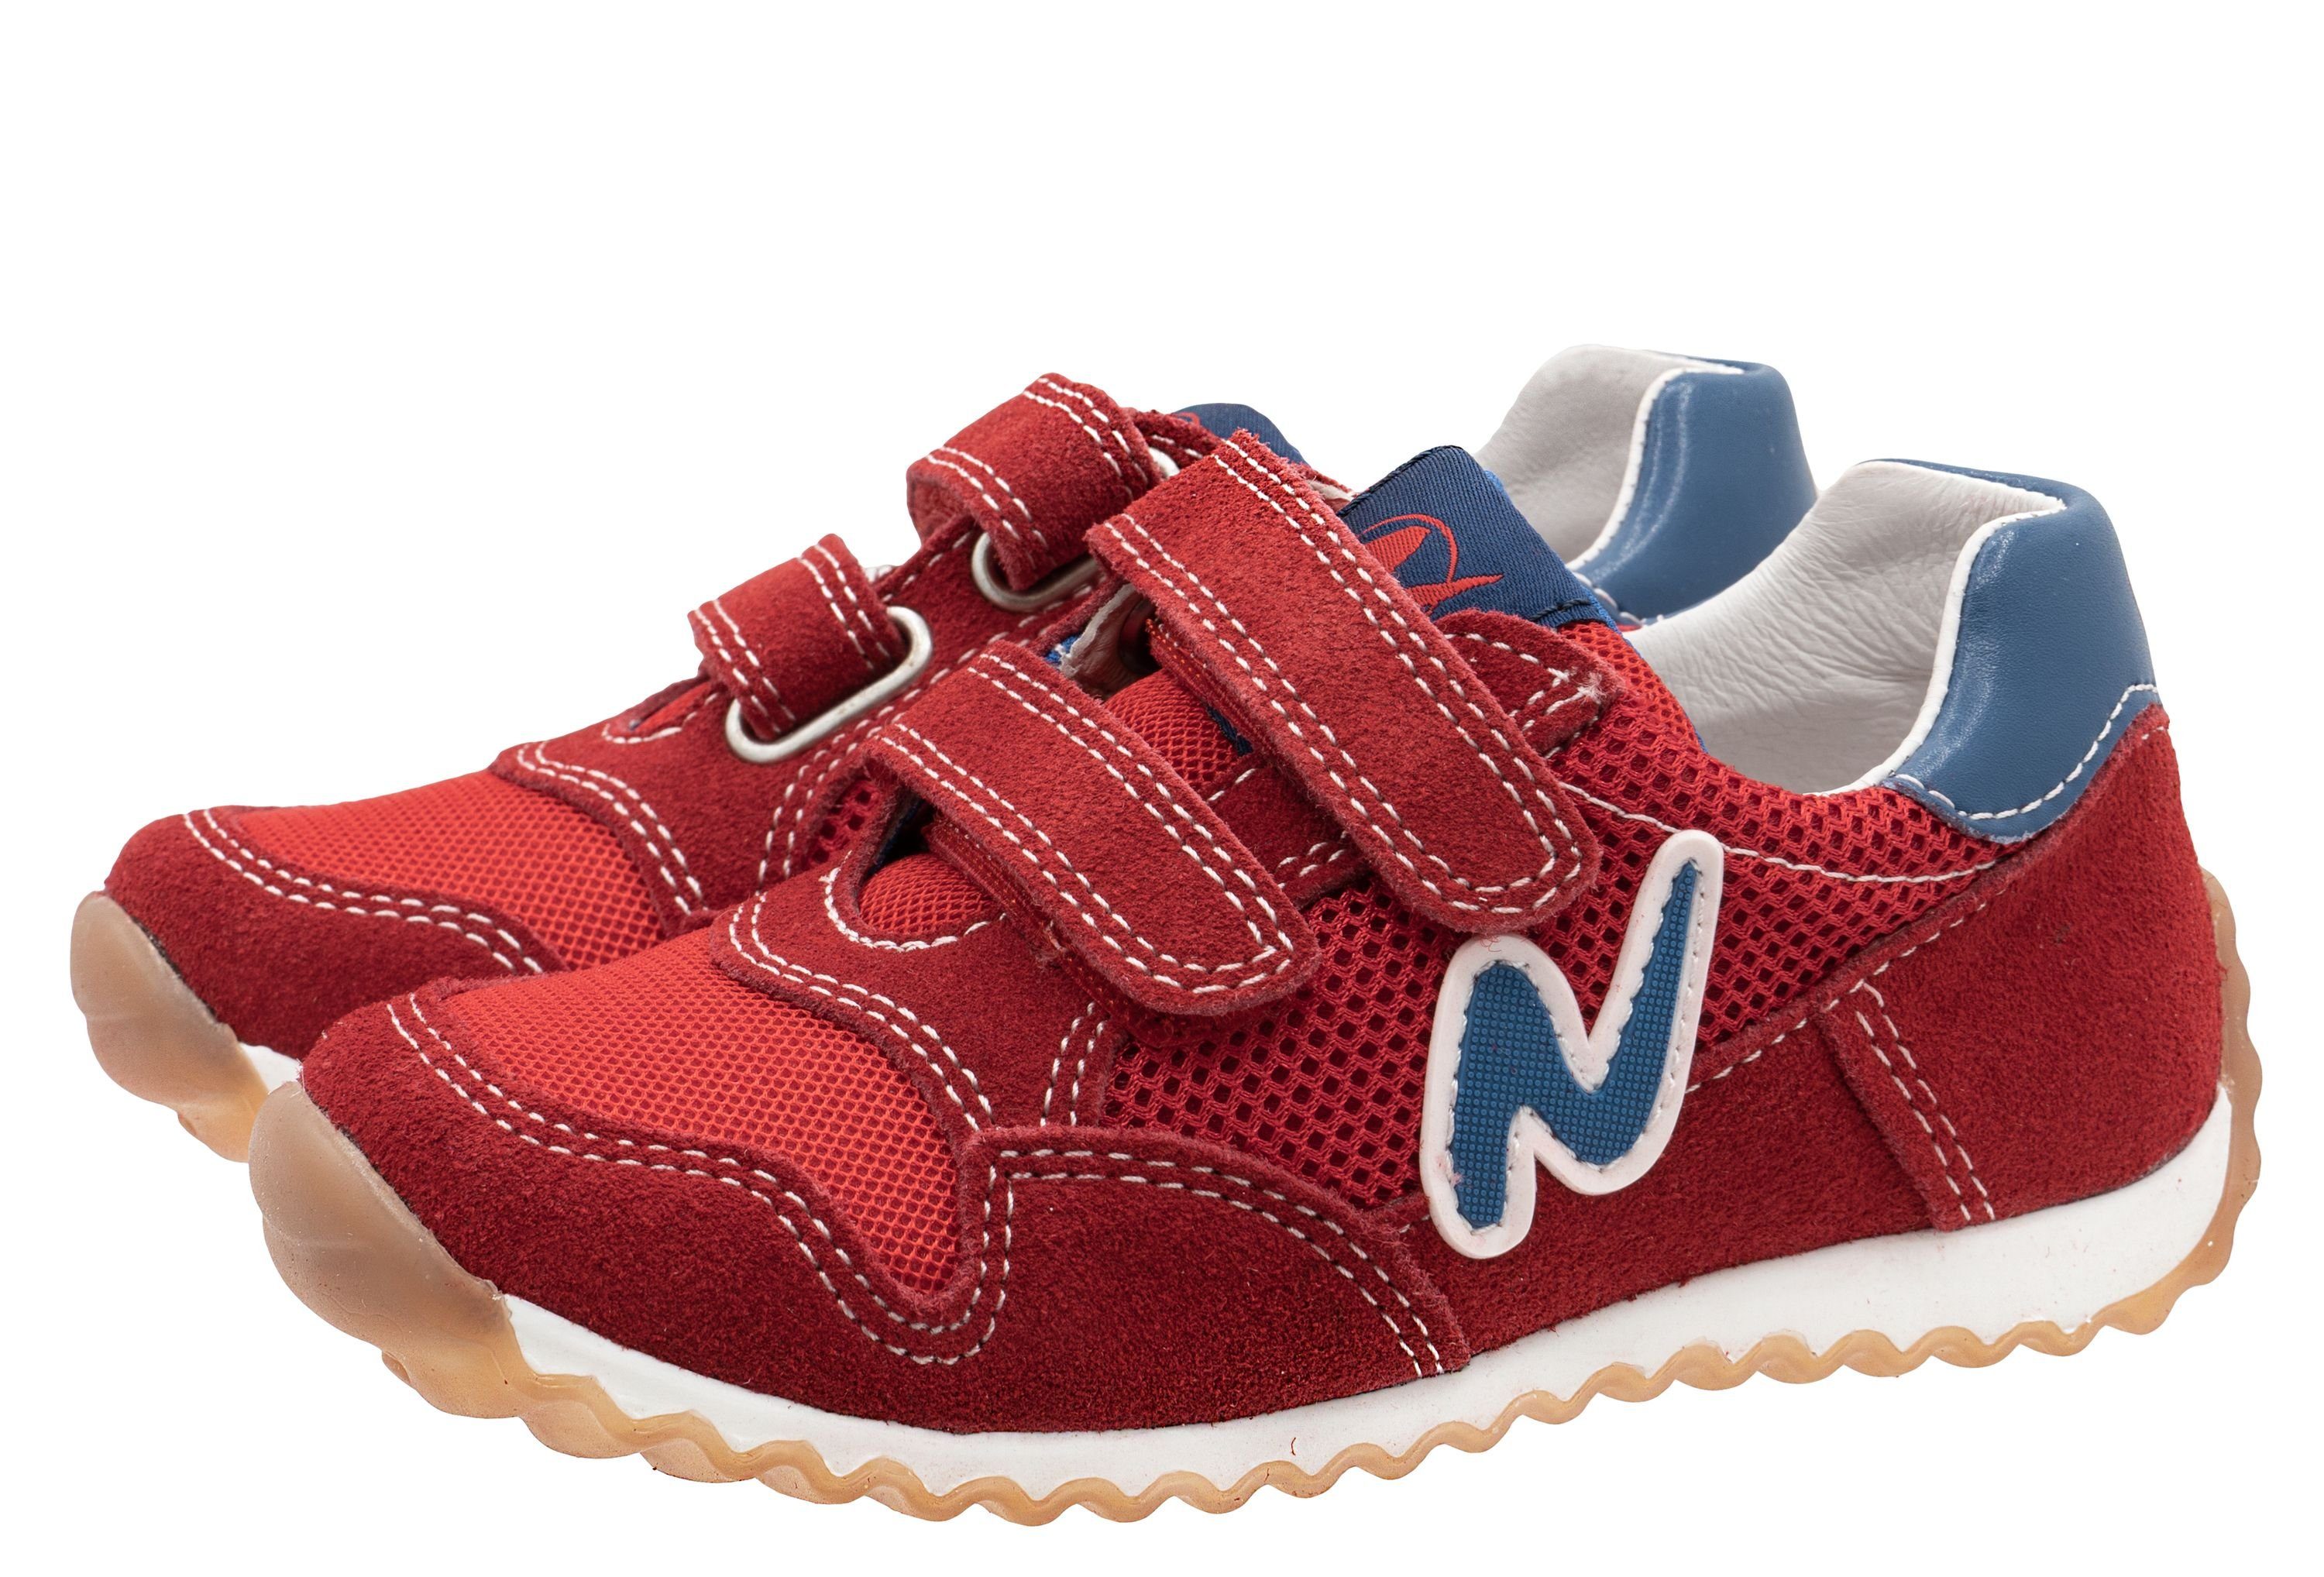 Naturino Naturino Sneaker Sammy für Kinder mit Lederfutter 0H05 rot Sneaker